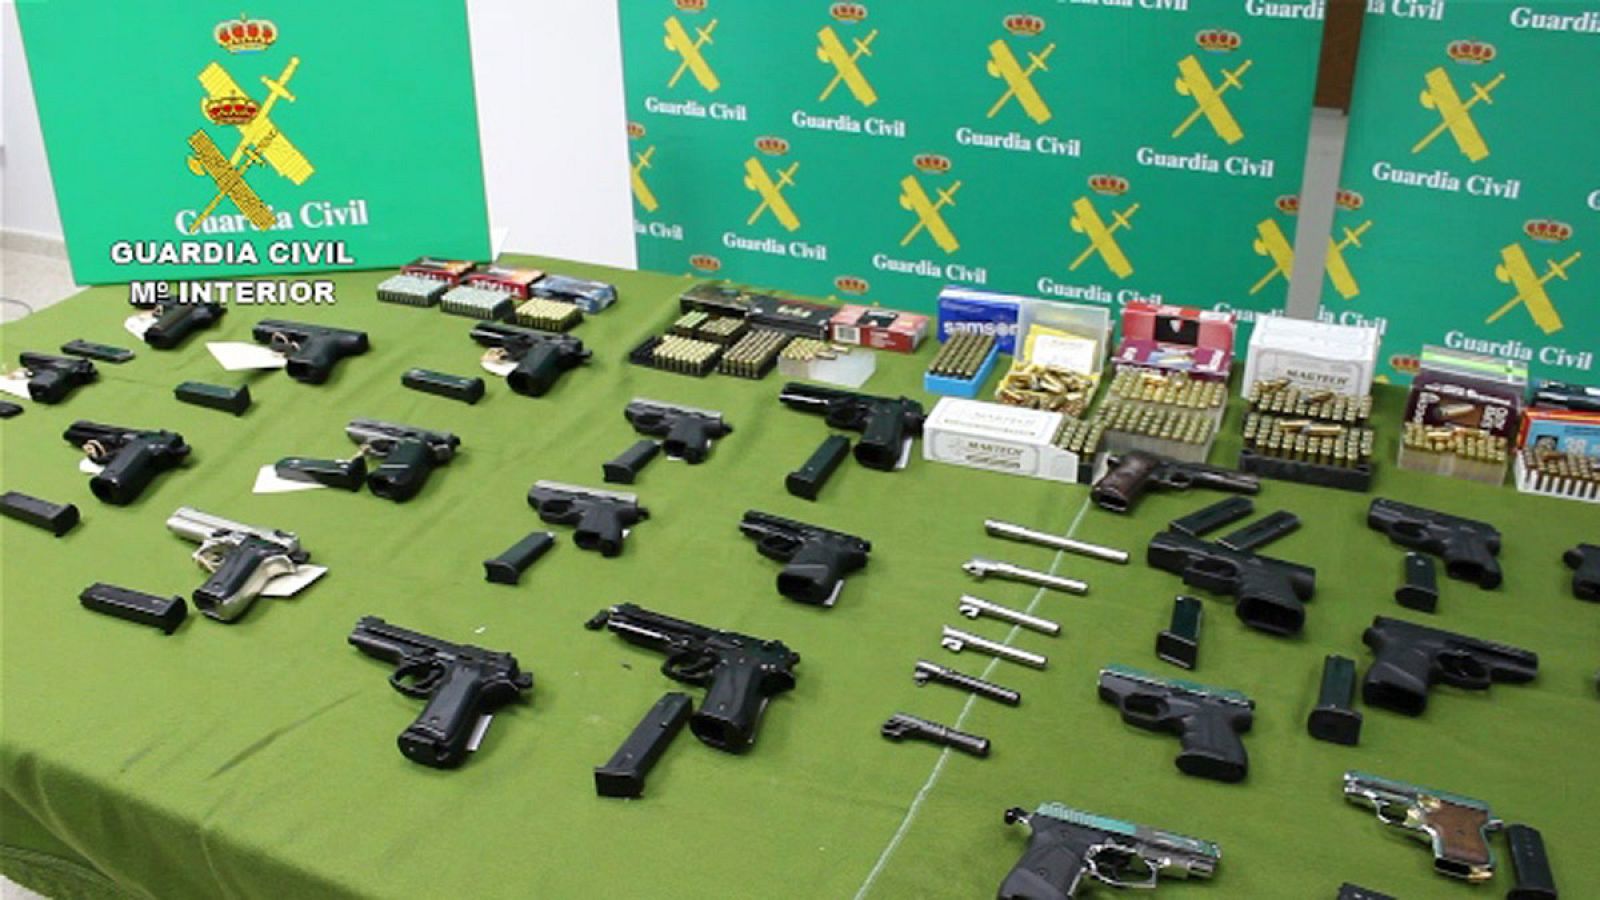 Imagen de algunas de las armas incautadas por la Guardia Civil este lunes en varias provincias españolas